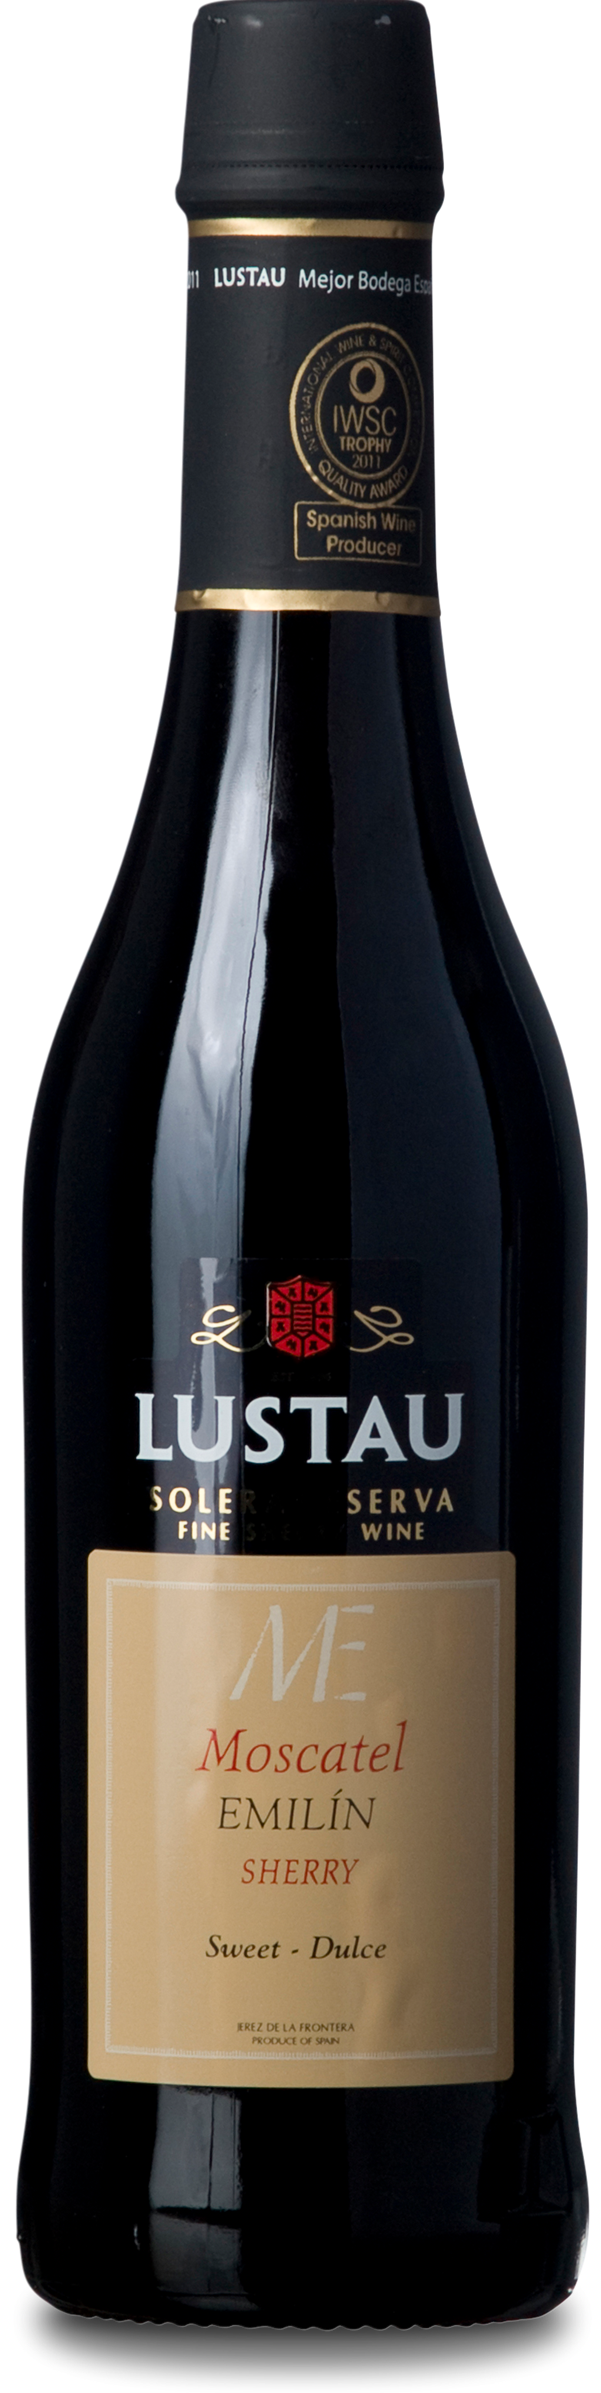 Lustau Emilin, Moscatel Sherry 37,5 cl.